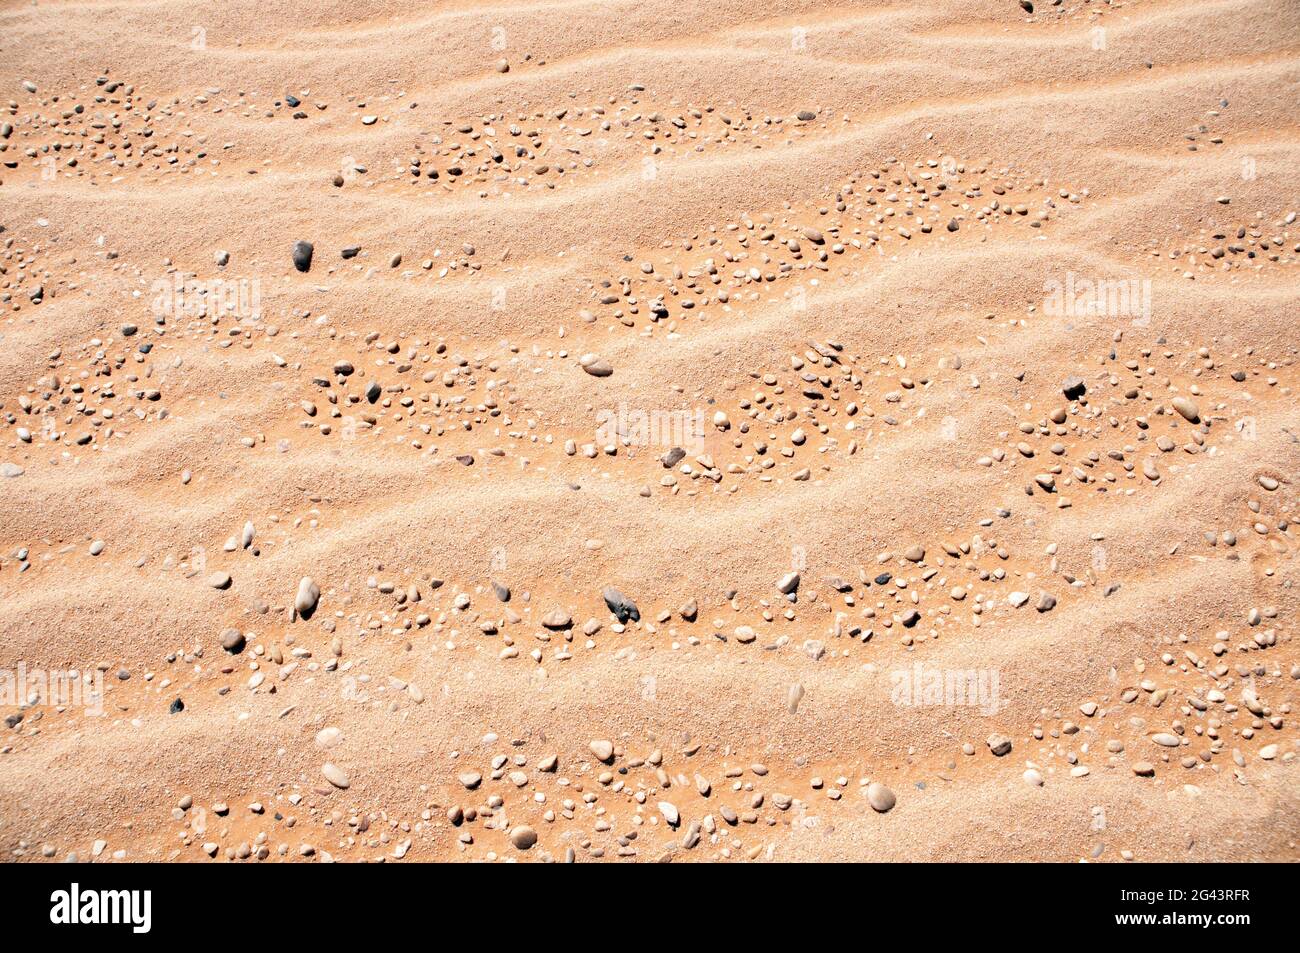 Windgeblasene Sandkräuseln und Kieselsteine, die Teil eines alten Meeresbodens sind, in der westlichen Wüstenregion der Sahara im Südwesten Ägyptens. Stockfoto